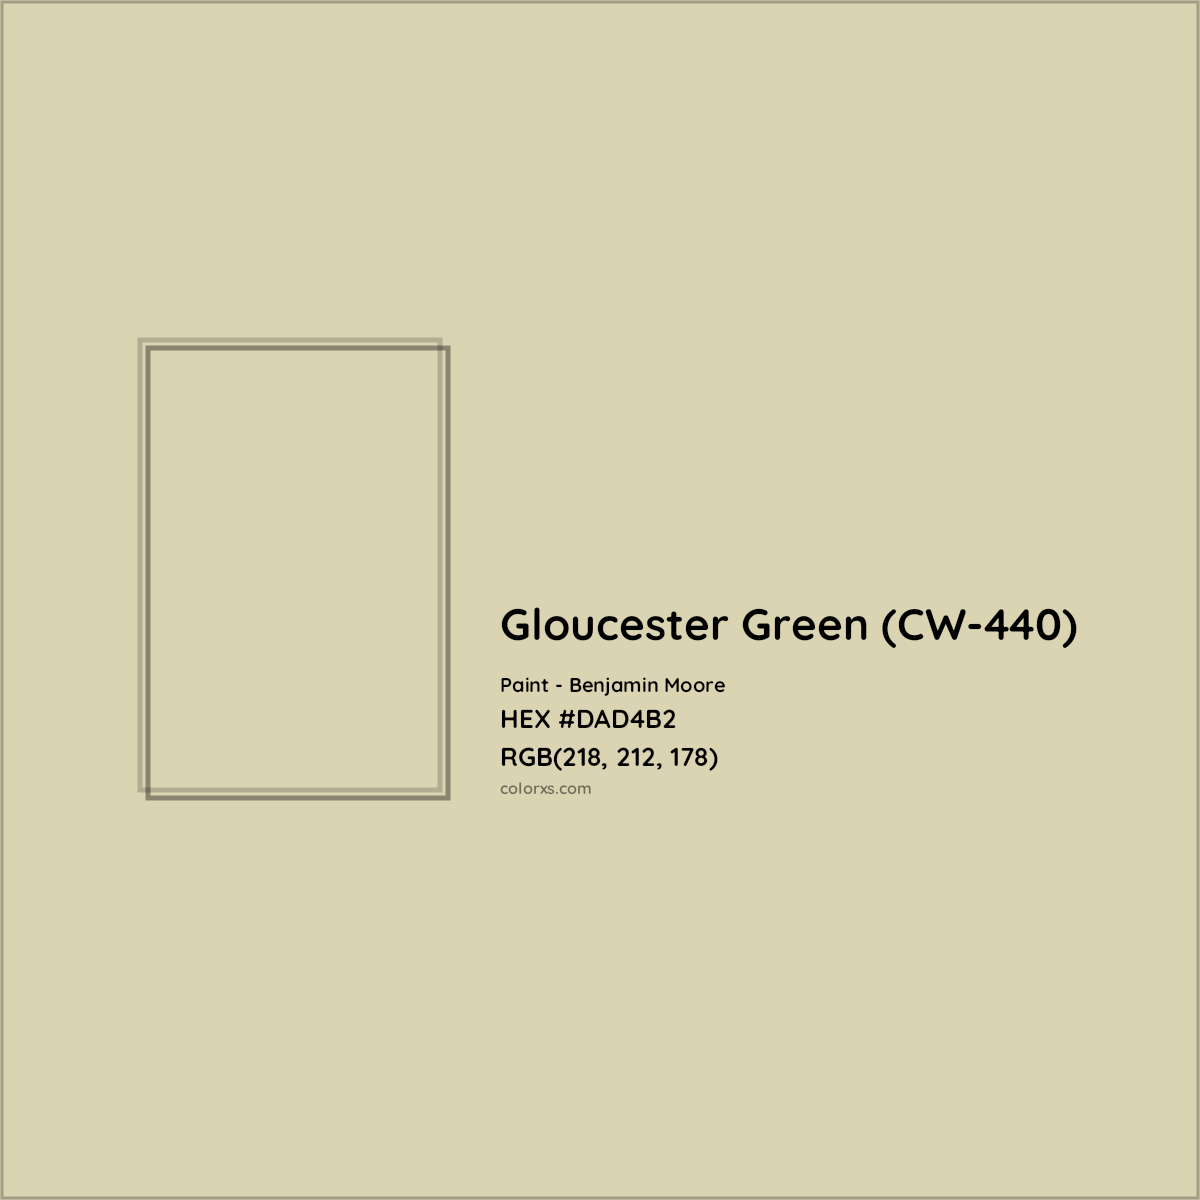 HEX #DAD4B2 Gloucester Green (CW-440) Paint Benjamin Moore - Color Code